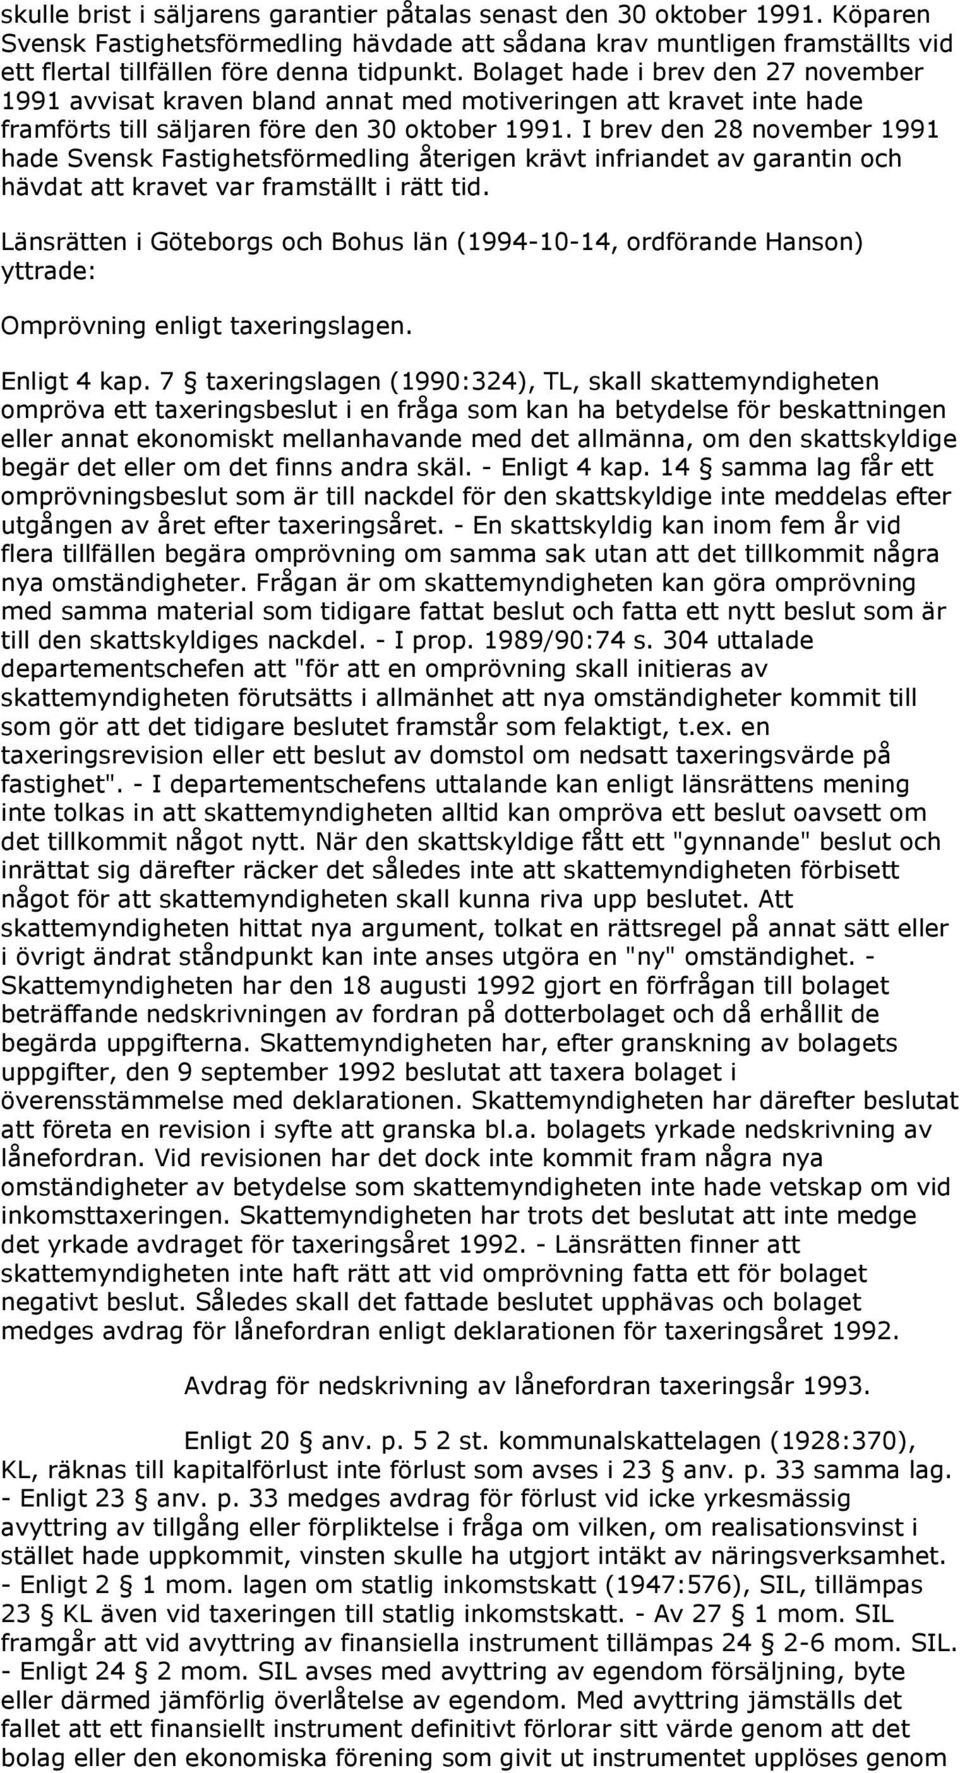 I brev den 28 november 1991 hade Svensk Fastighetsförmedling återigen krävt infriandet av garantin och hävdat att kravet var framställt i rätt tid.